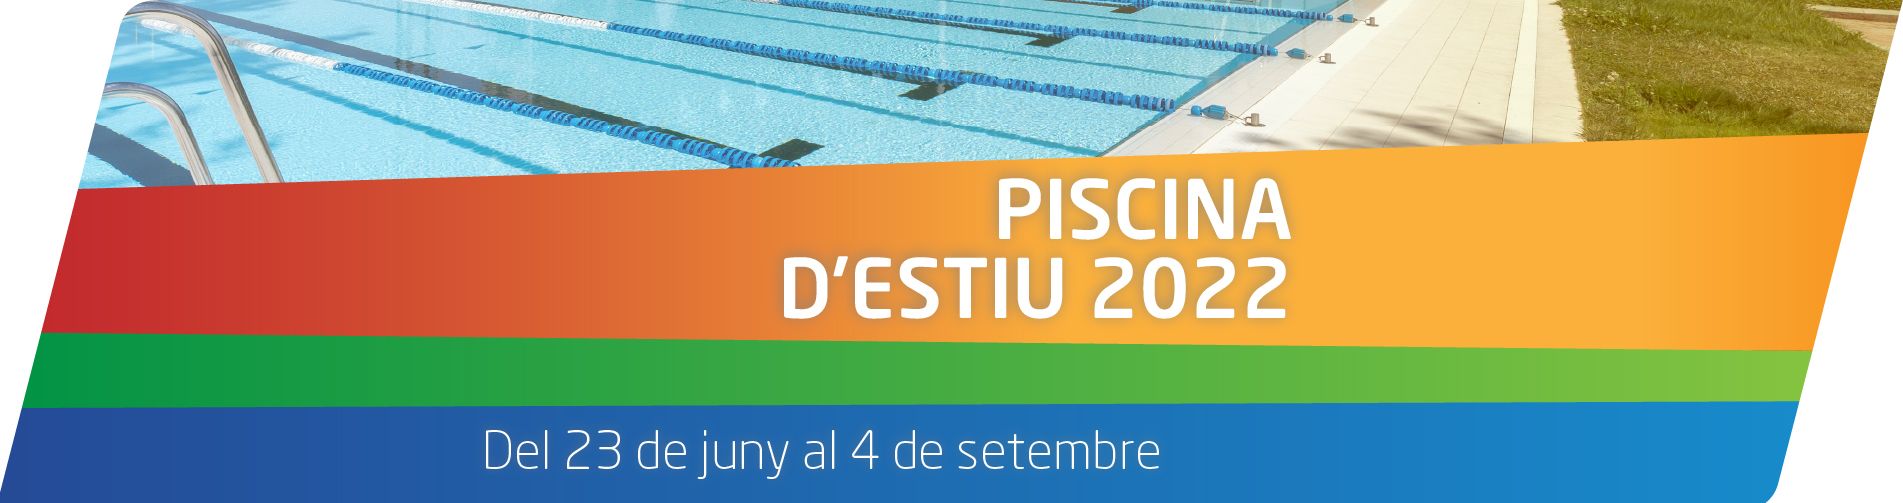 Del 23 de juny al 4 de setembre, temporada d’estiu al CNG amb l’ús recreatiu de les piscines exteriors